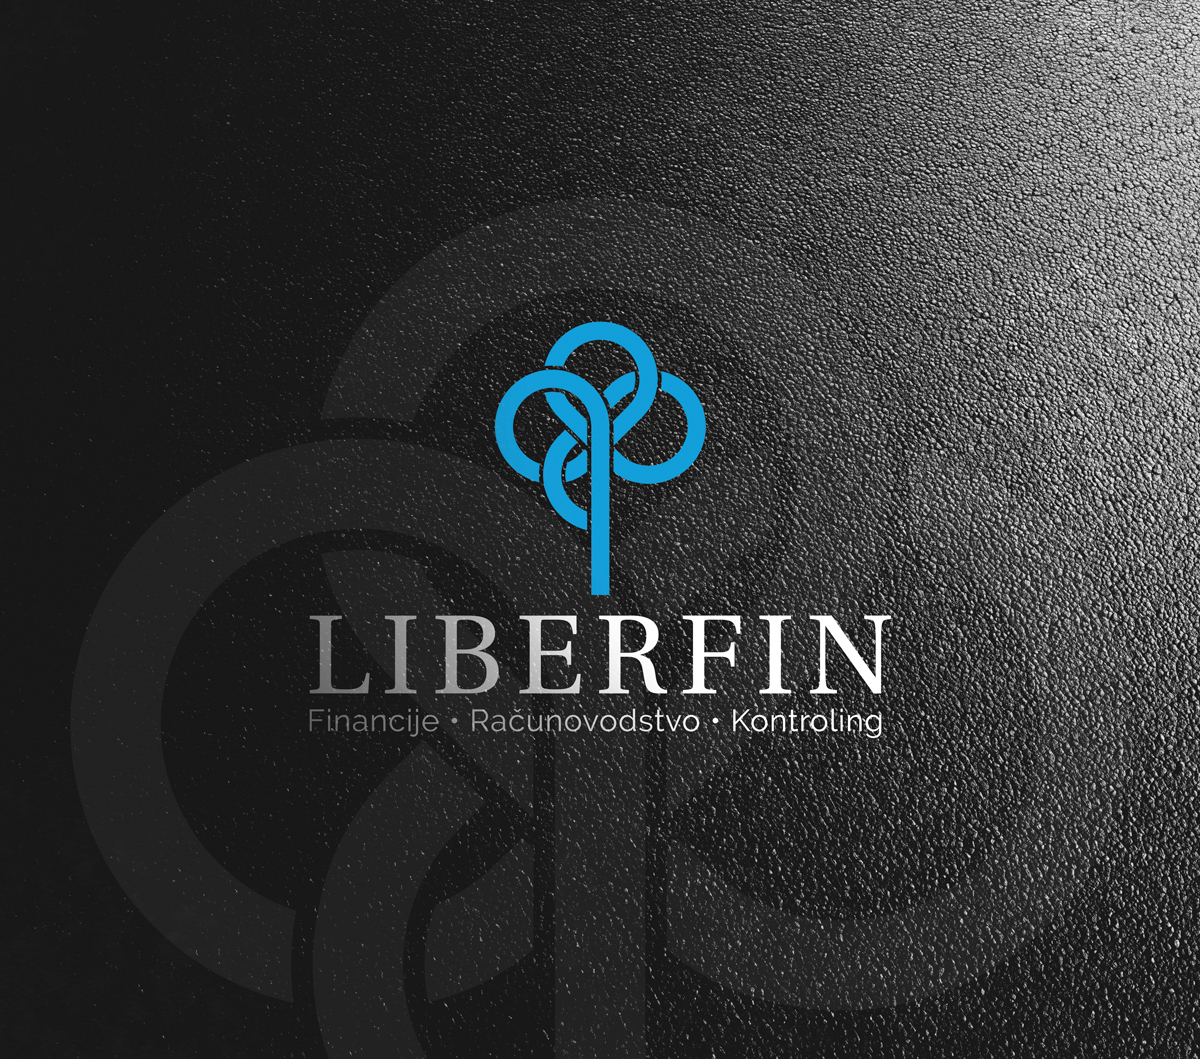 Dizajn loga za tvrtku Liberfin iz Zagreba. Na crnoj podlozi u kojoj je otisnuta ikona loga u tamno sivoj boji se nalazi jarko plavi logo. Logo je su tri isprepletena kruga te se nastavak sppušta do imena tvrtke koje je napisano štampanim slovima u bijeloj boji.